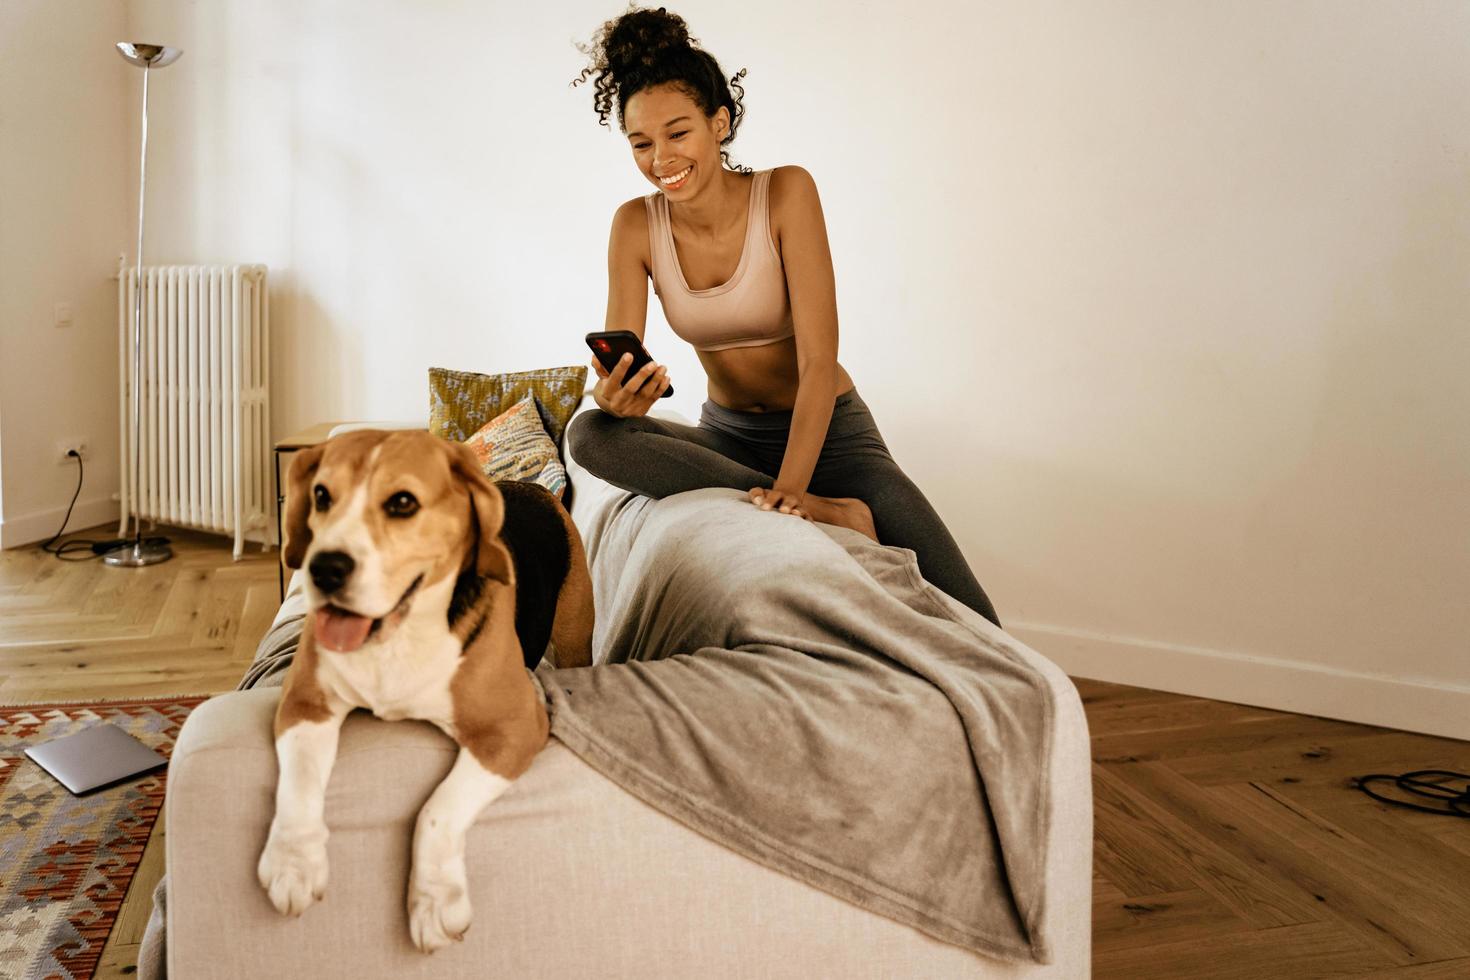 svart ung kvinna som använder mobiltelefon medan hon sitter med sin hund på soffan foto